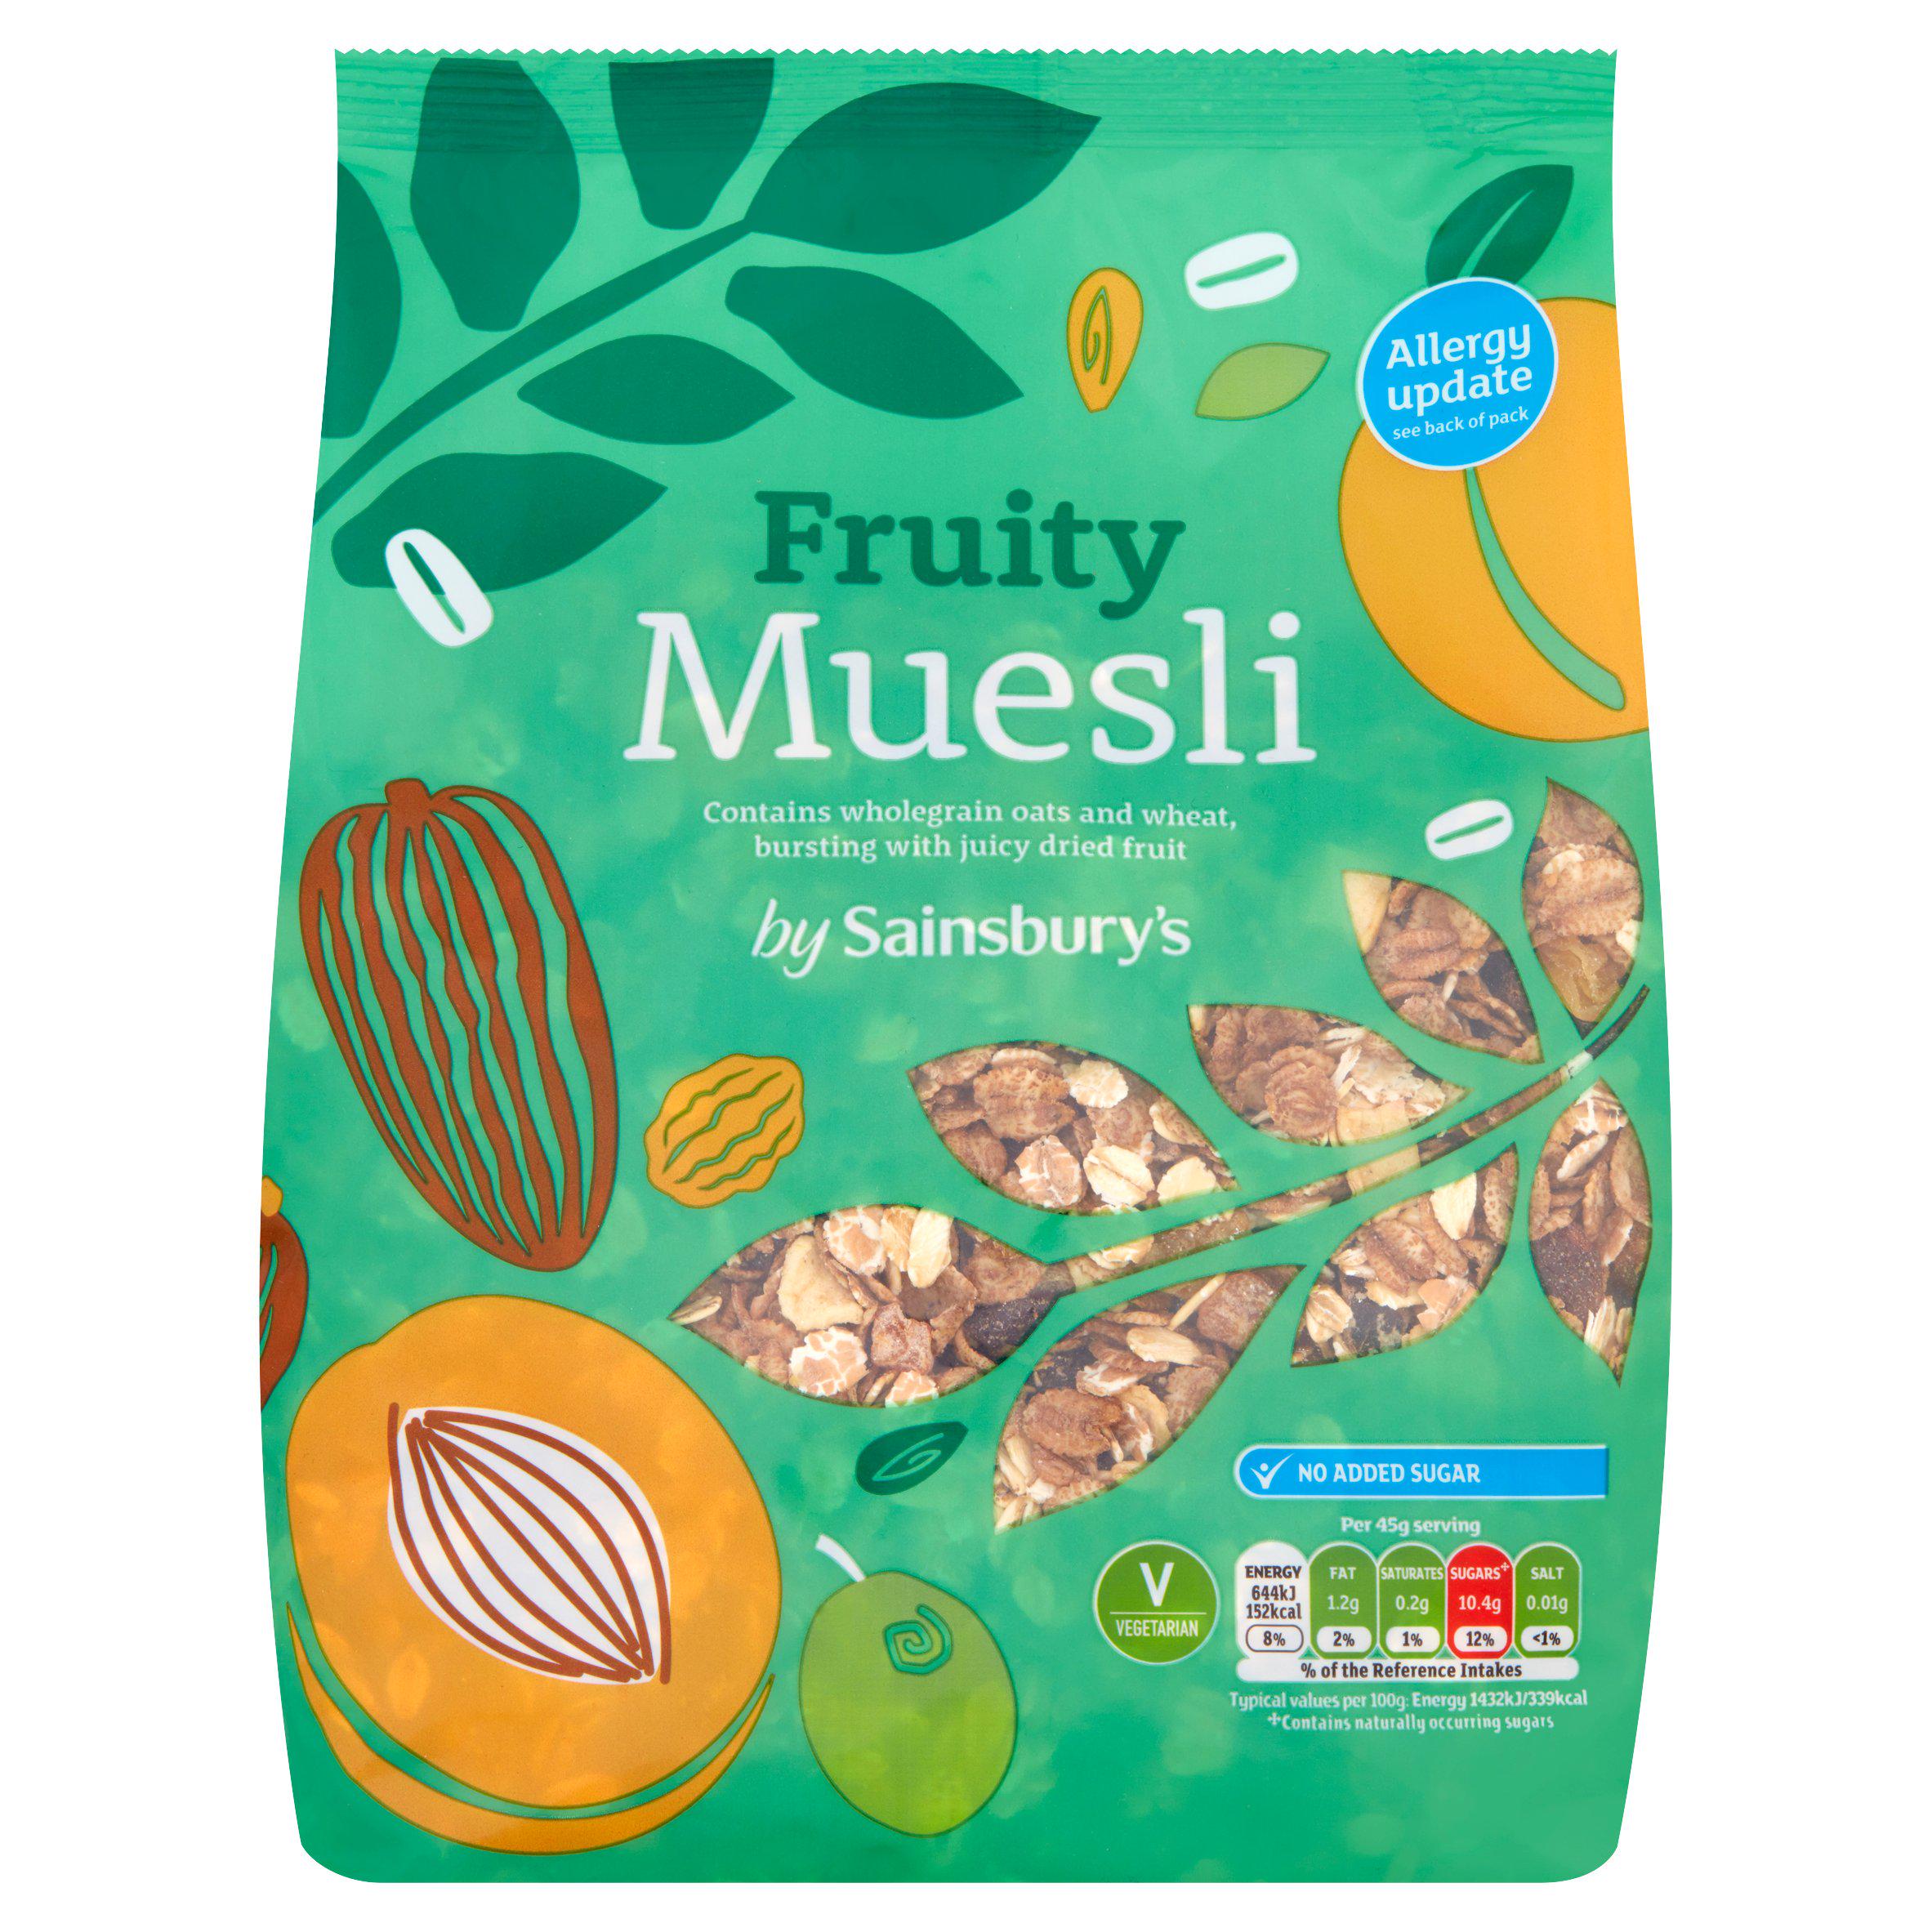 Sainsbury's Fruity Muesli 750g